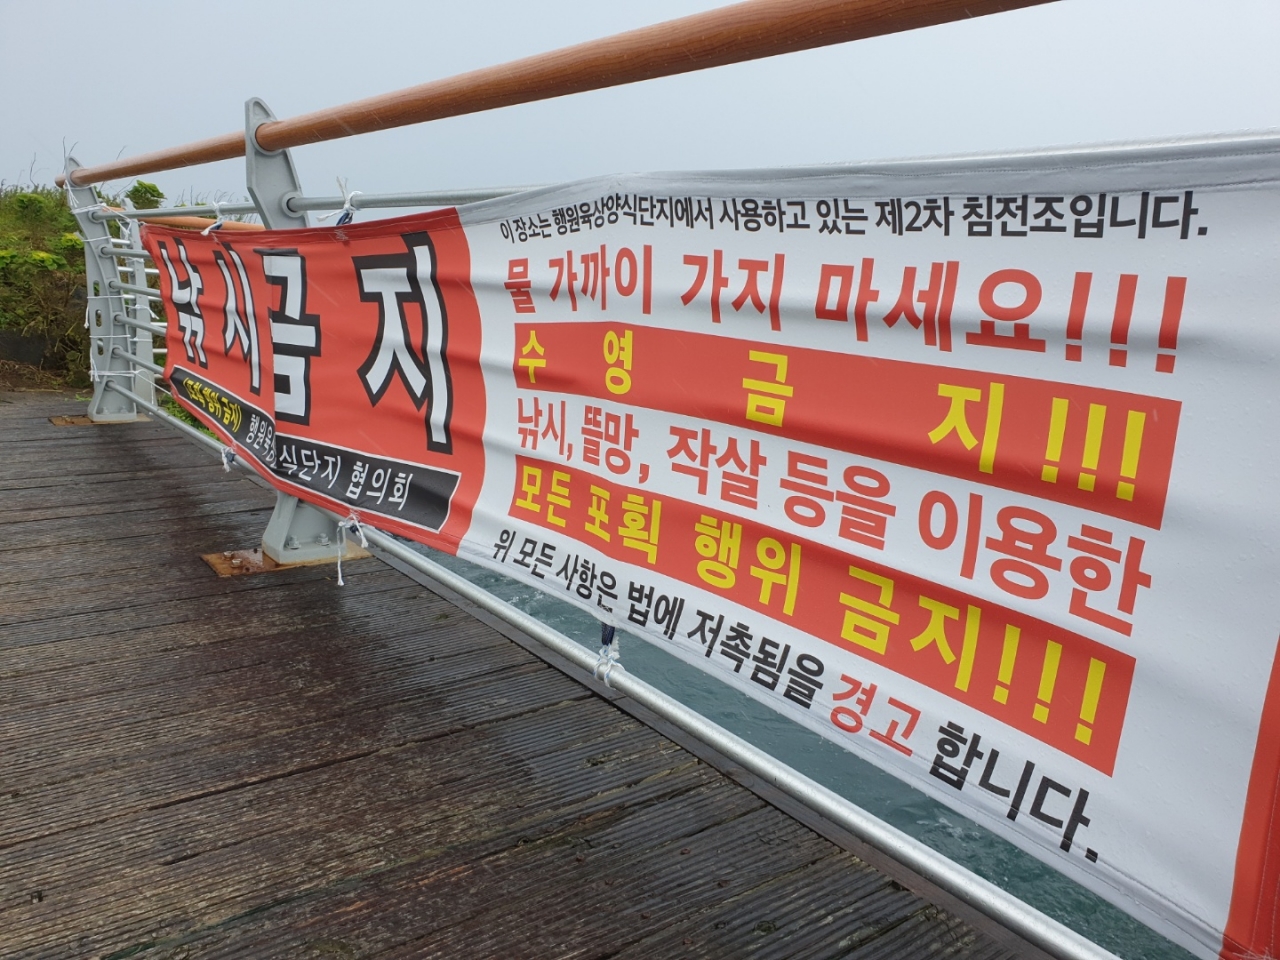 5일 행원육상양식단지 앞 바다에 낚시 금지를 알리는 현수막이 붙어 있다.